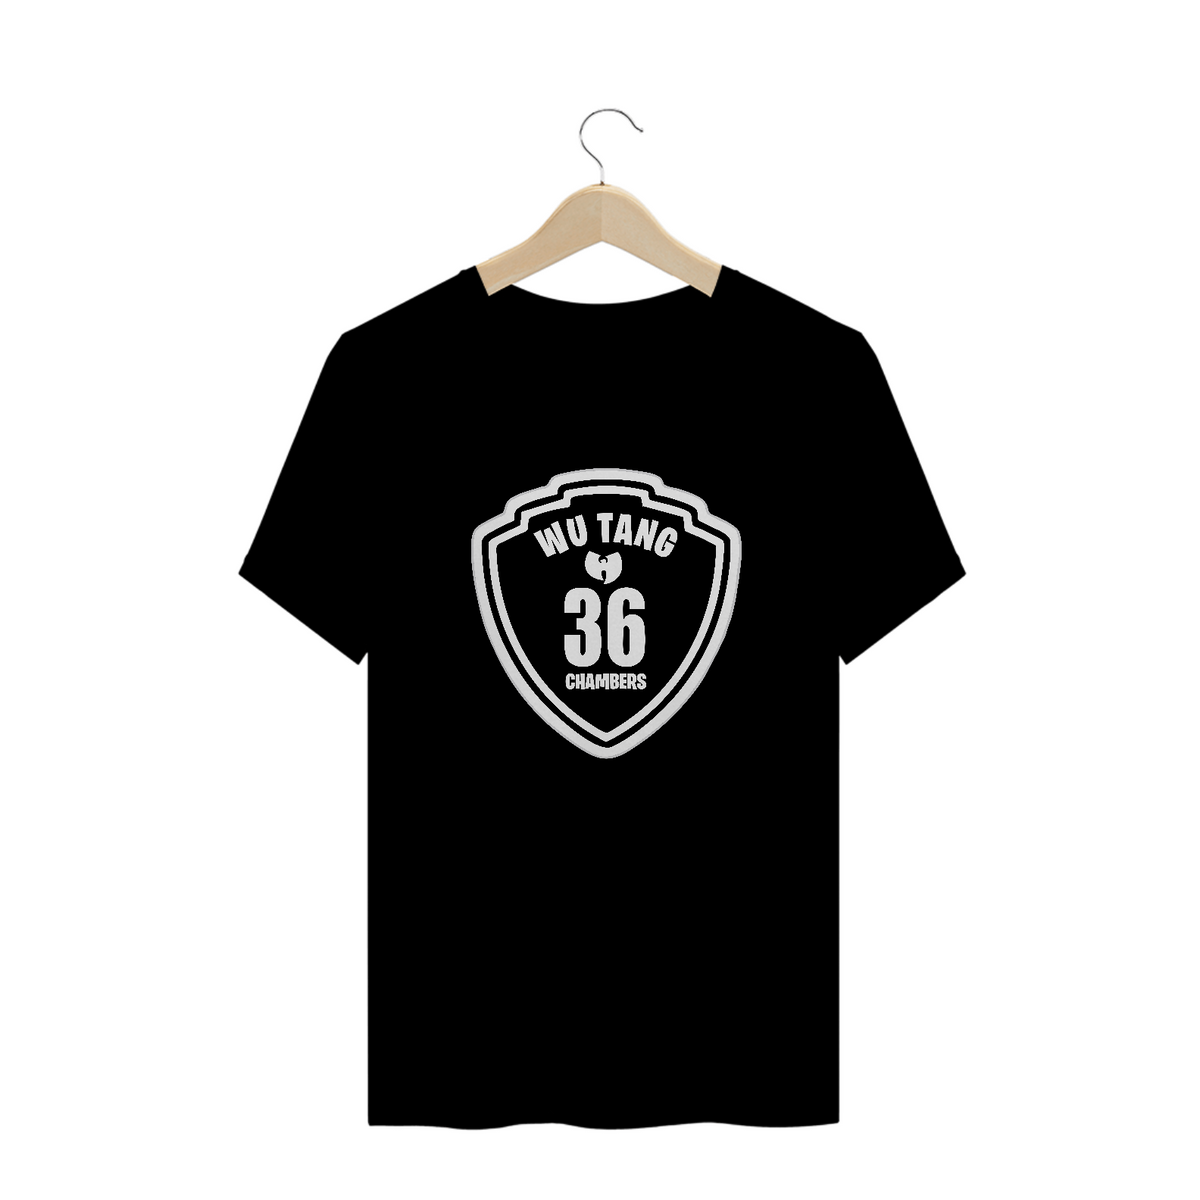 Nome do produto: Camiseta de Malha Quality Wu Tang Clan Escudo 36 Chambers